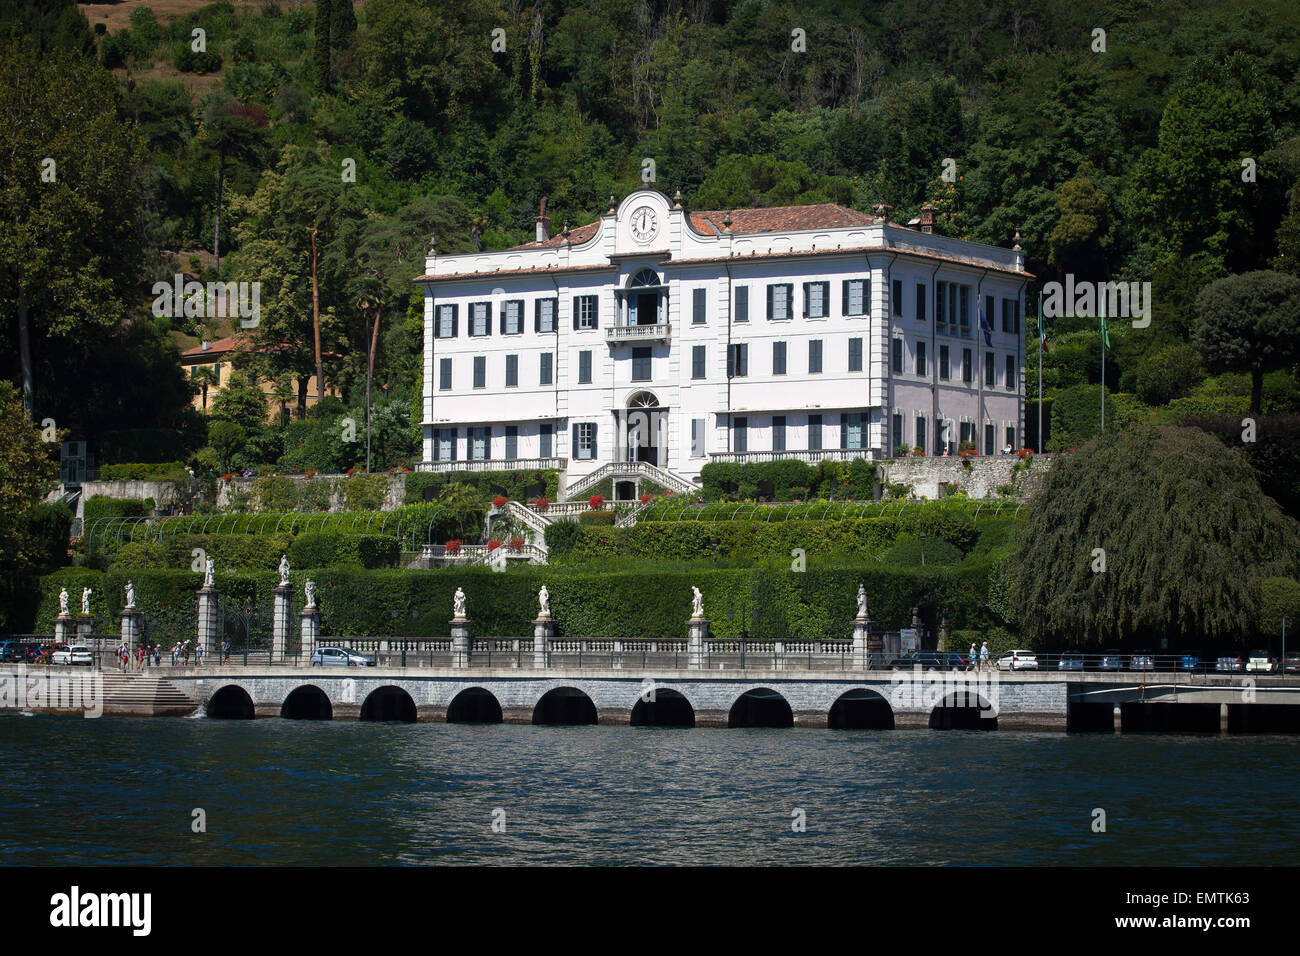 Villa Carlotta in Tremezzo, Lake Como, Italy Stock Photo